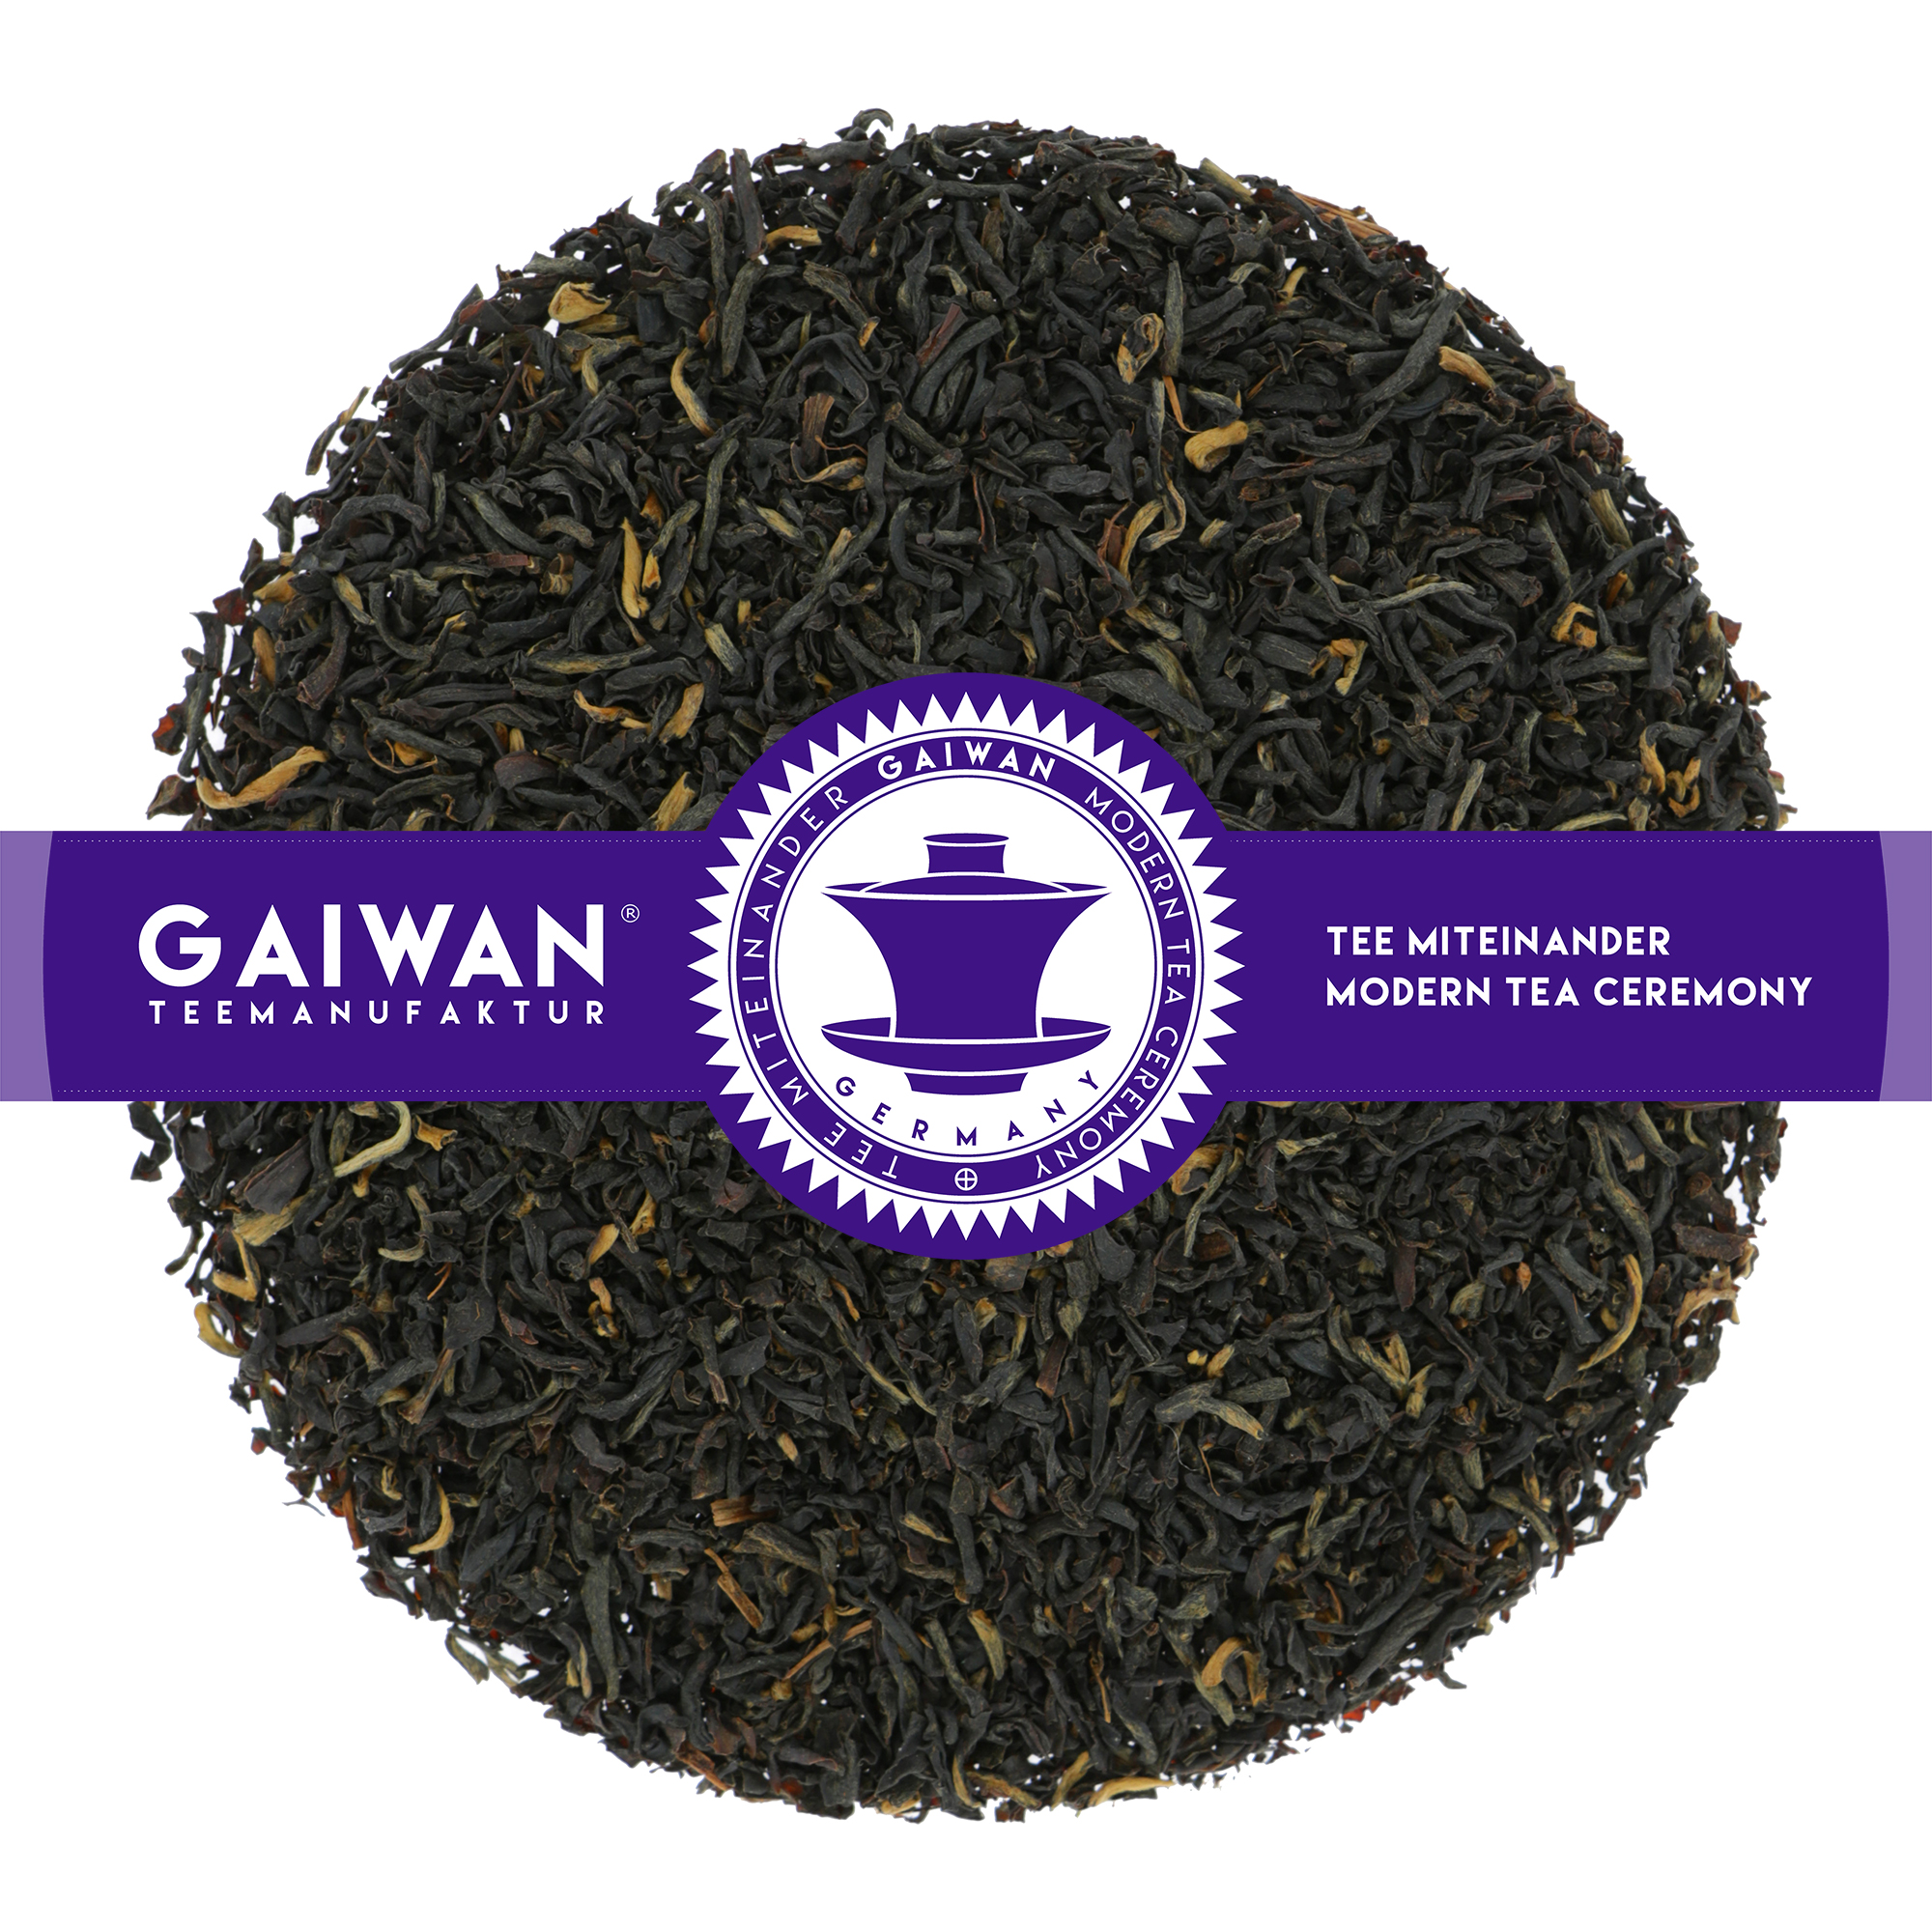 Assam Balijan TGFBOP - schwarzer Tee aus Indien - GAIWAN Tee Nr. 1310